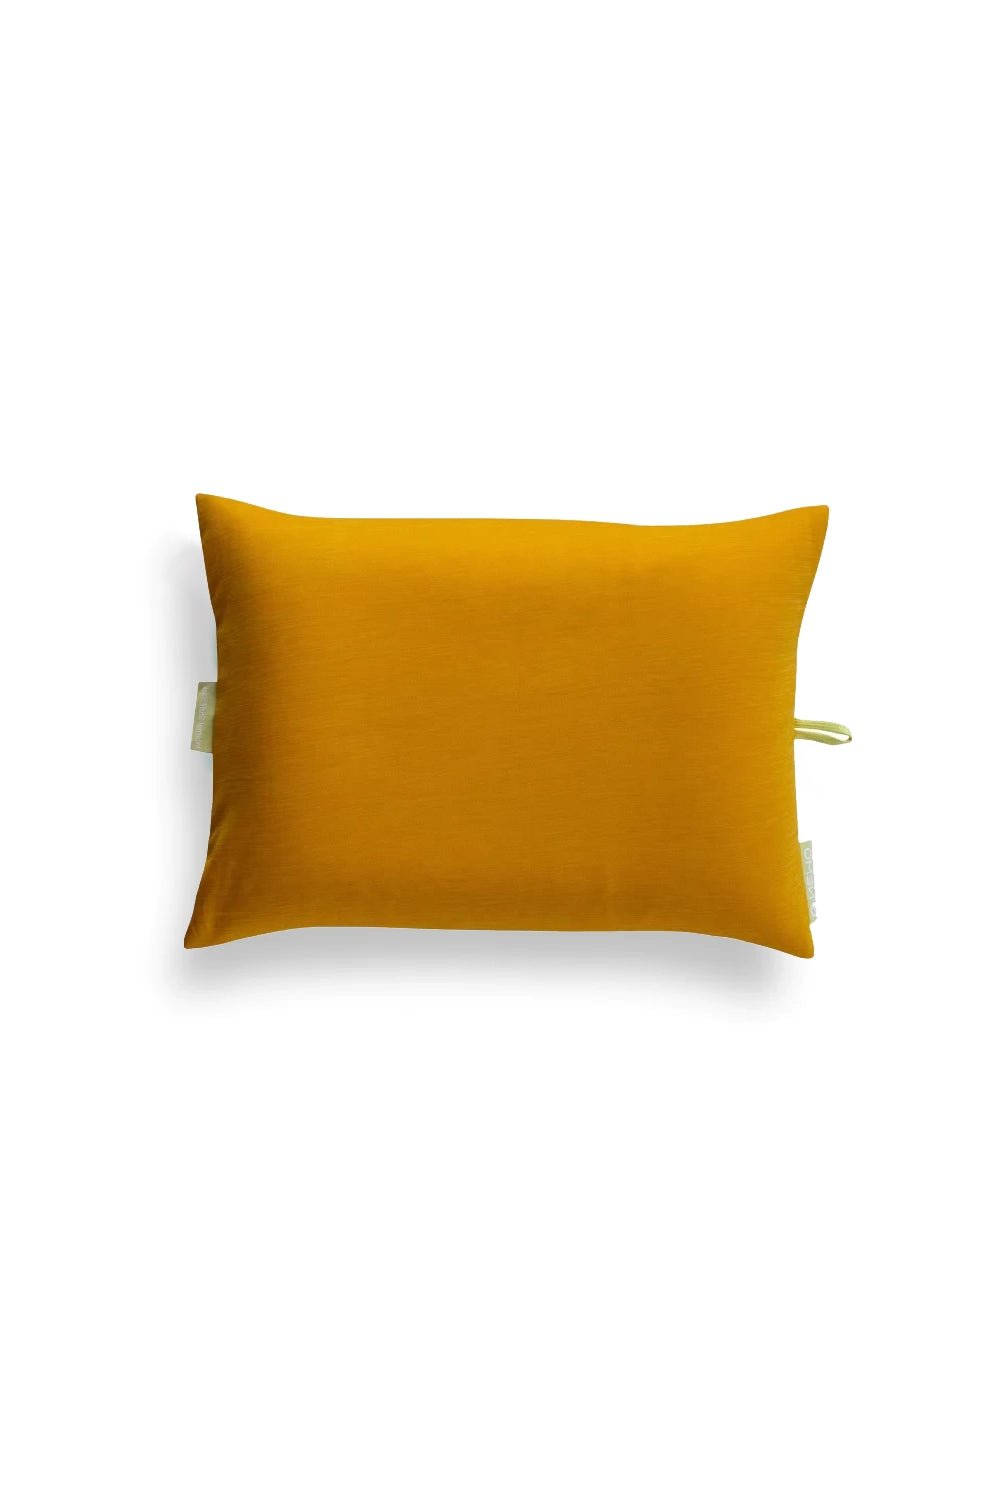 Nemo Fillo Elite Pillow - Mango Citron | Coffee Outdoors